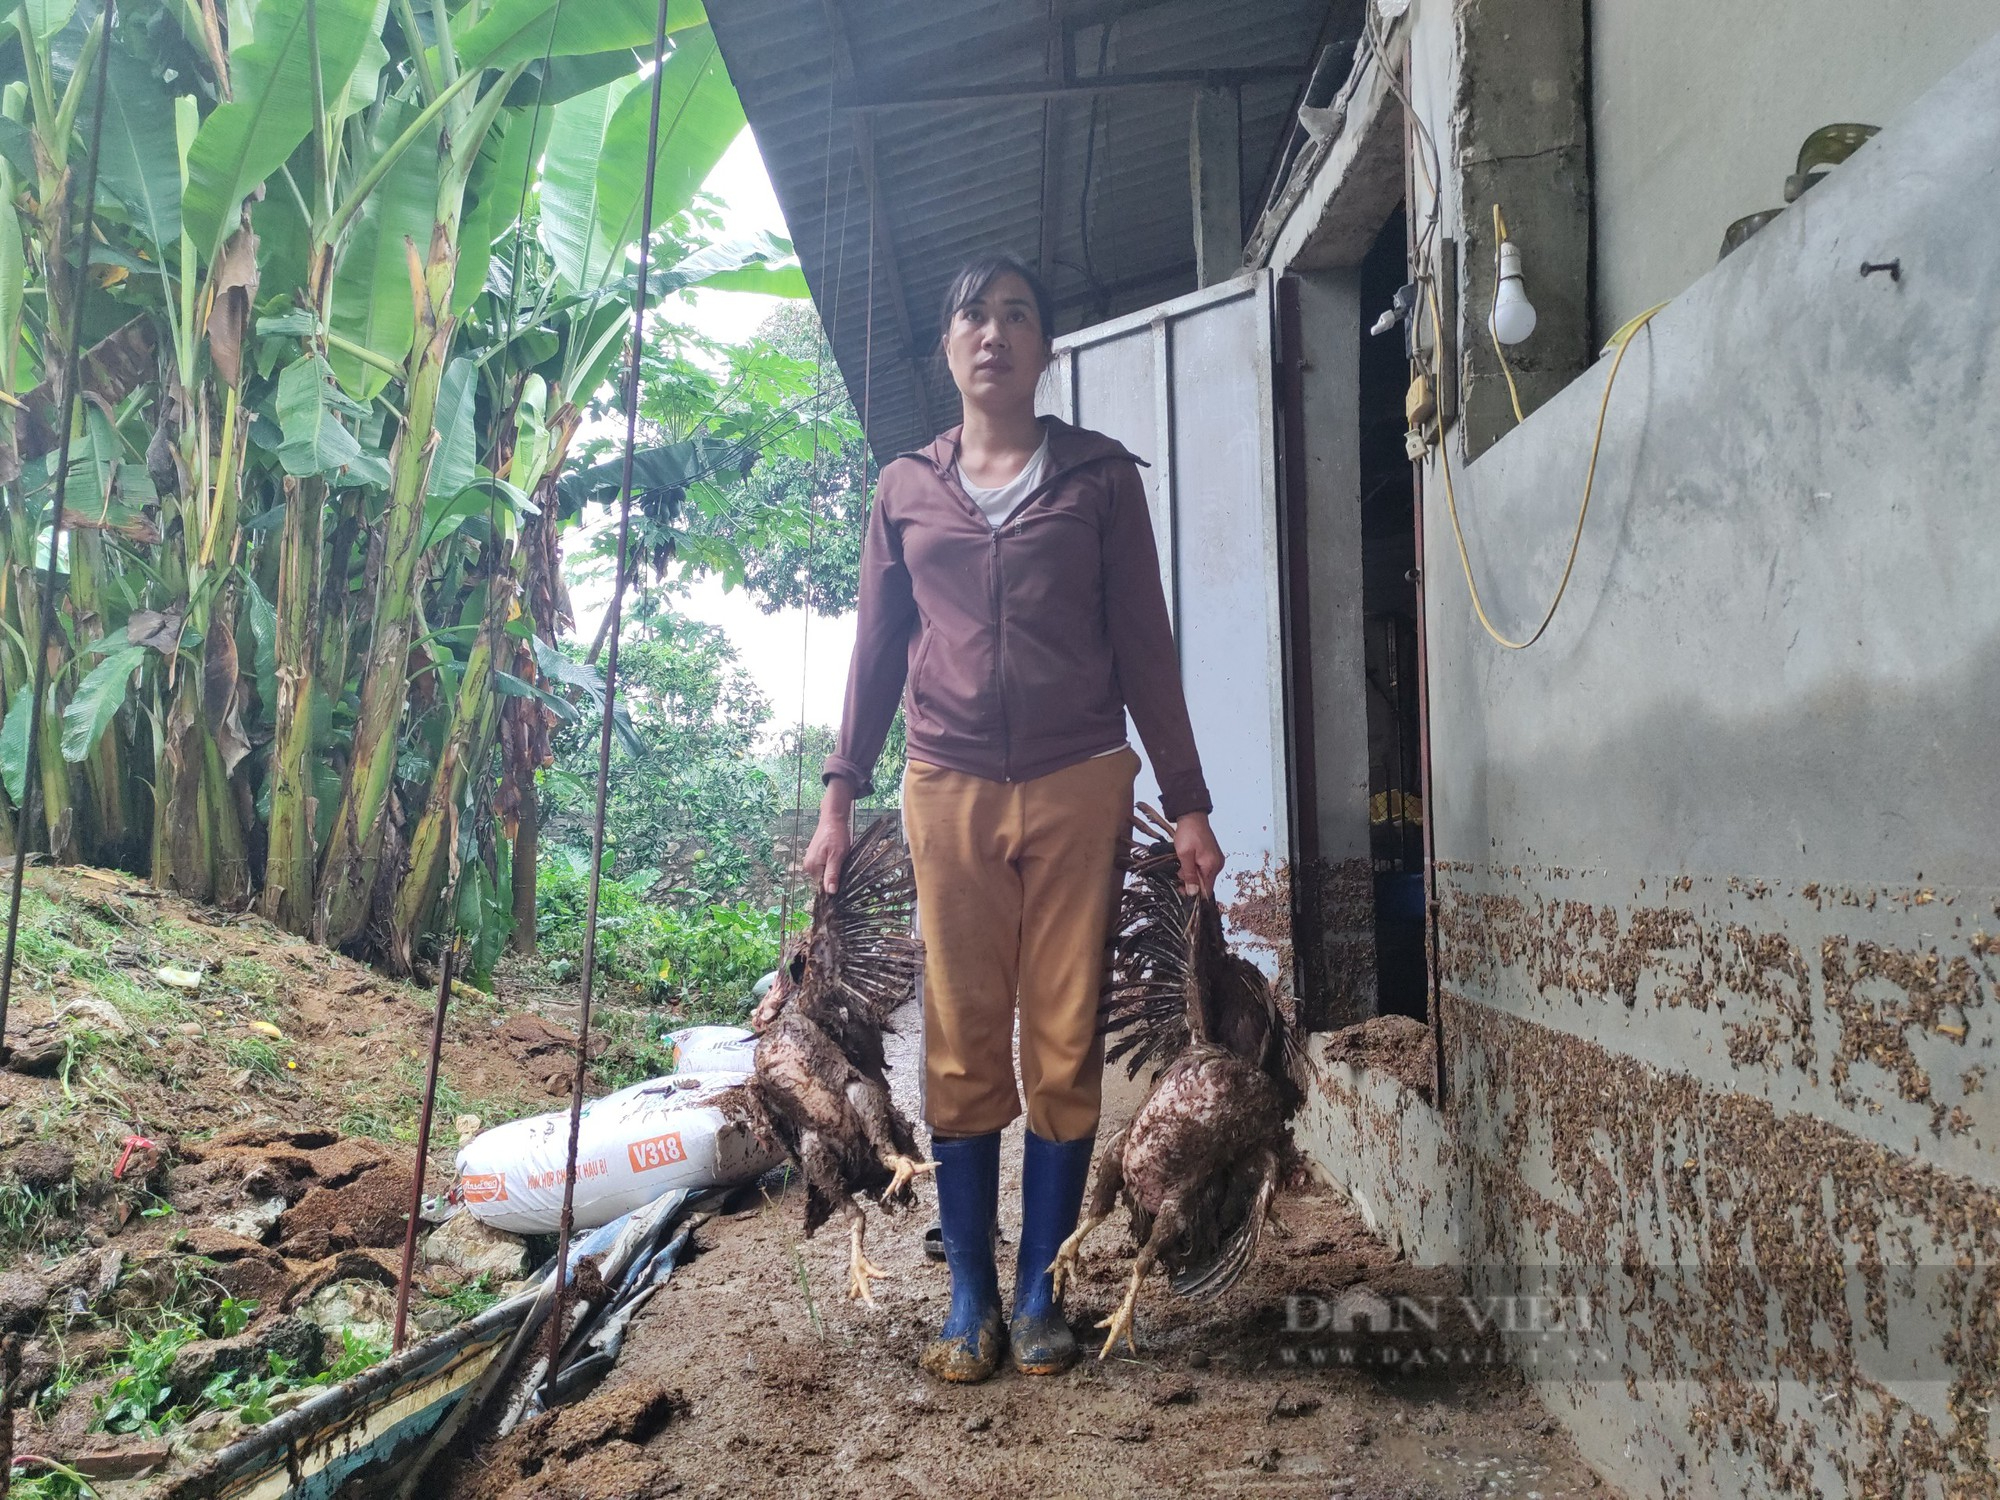 Nước lũ dâng cao đột ngột, nông dân Hà Nội chết gần 2 nghìn con gà chỉ trong 30 phút - Ảnh 2.